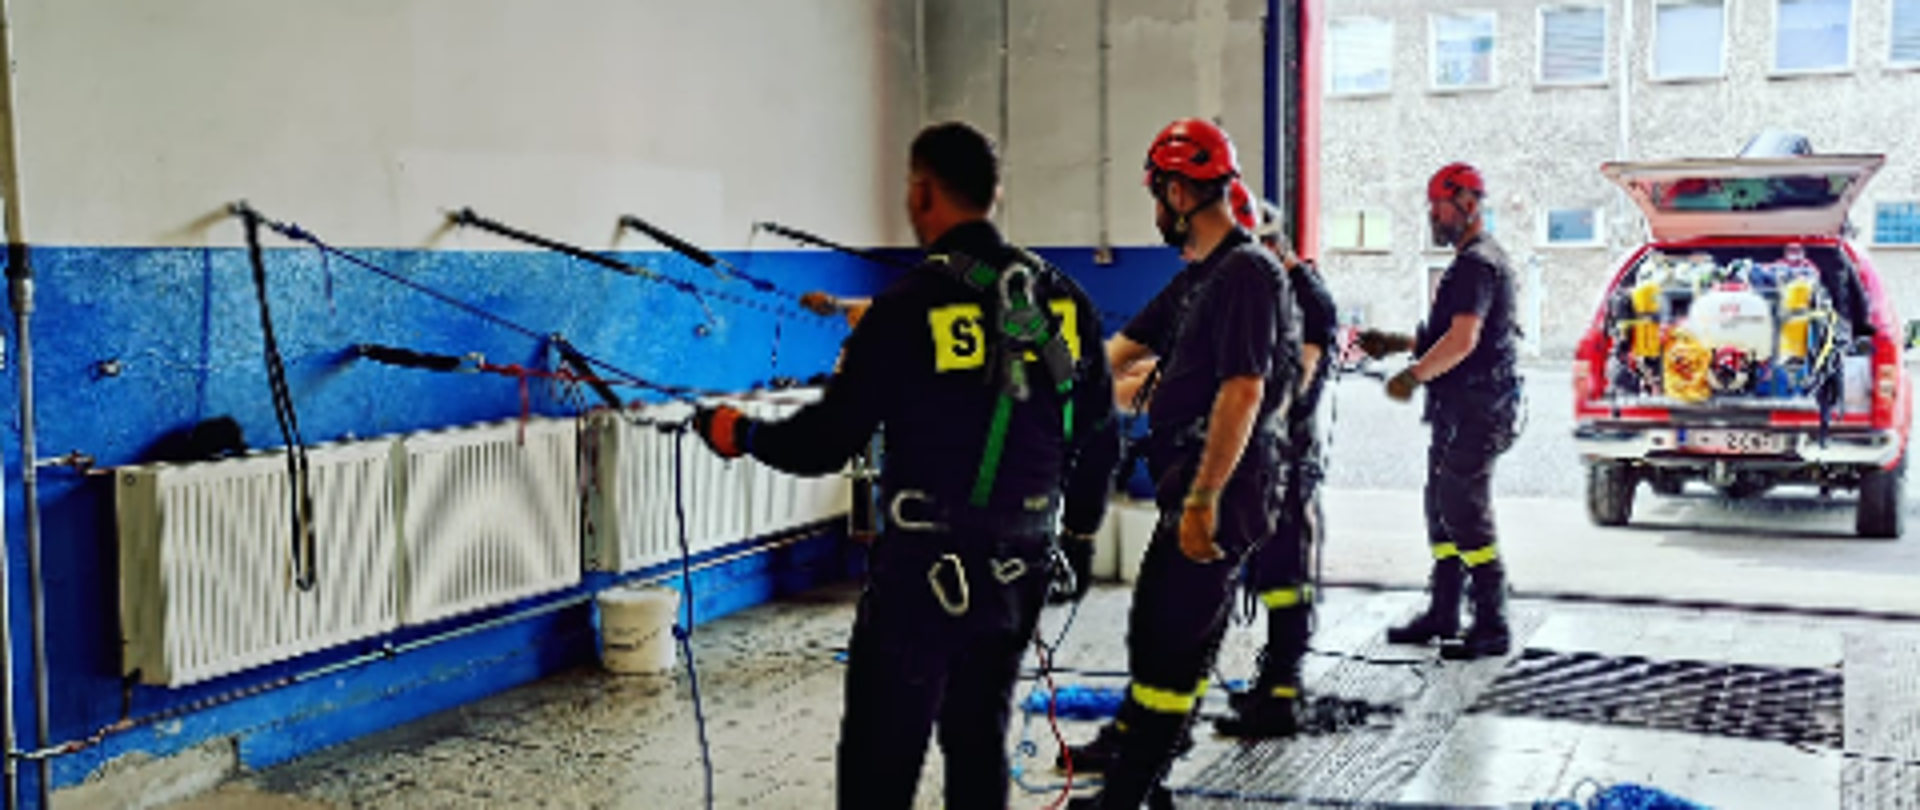 Na zdjęciu znajdują się ratownicy podczas ćwiczenia z ratownictwa wysokościowego, tj. 4 strażaków podpiętych do lin zamocowanych w uchwytach na ścianie nw garażu, w tle stoi samochód z otwartą klapą bagażnika